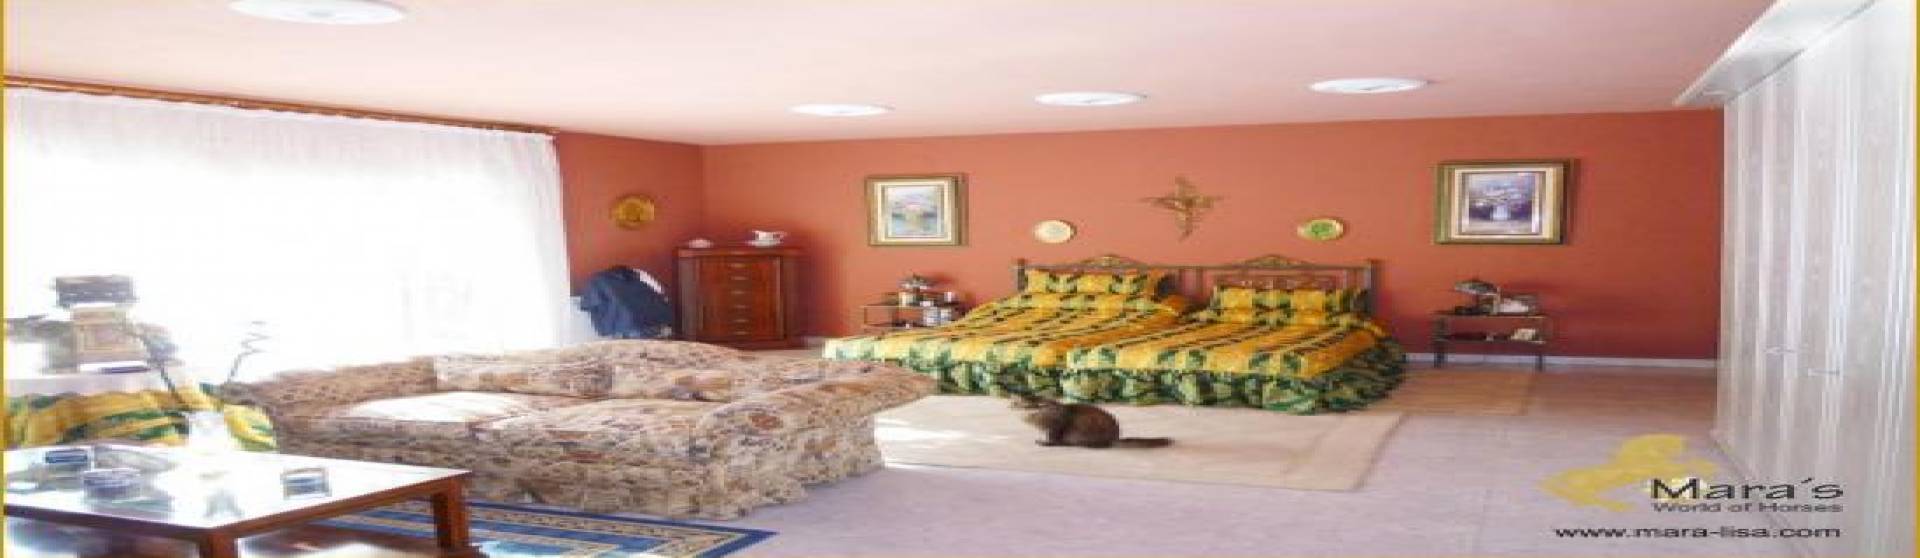 6 Schlafzimmer, Villa, zu verkaufen, 4 Badezimmer, Listing ID 1129, Chiclana de la Frontera - Novo Sancti Petri, Andalusien, Spanien, 11130,